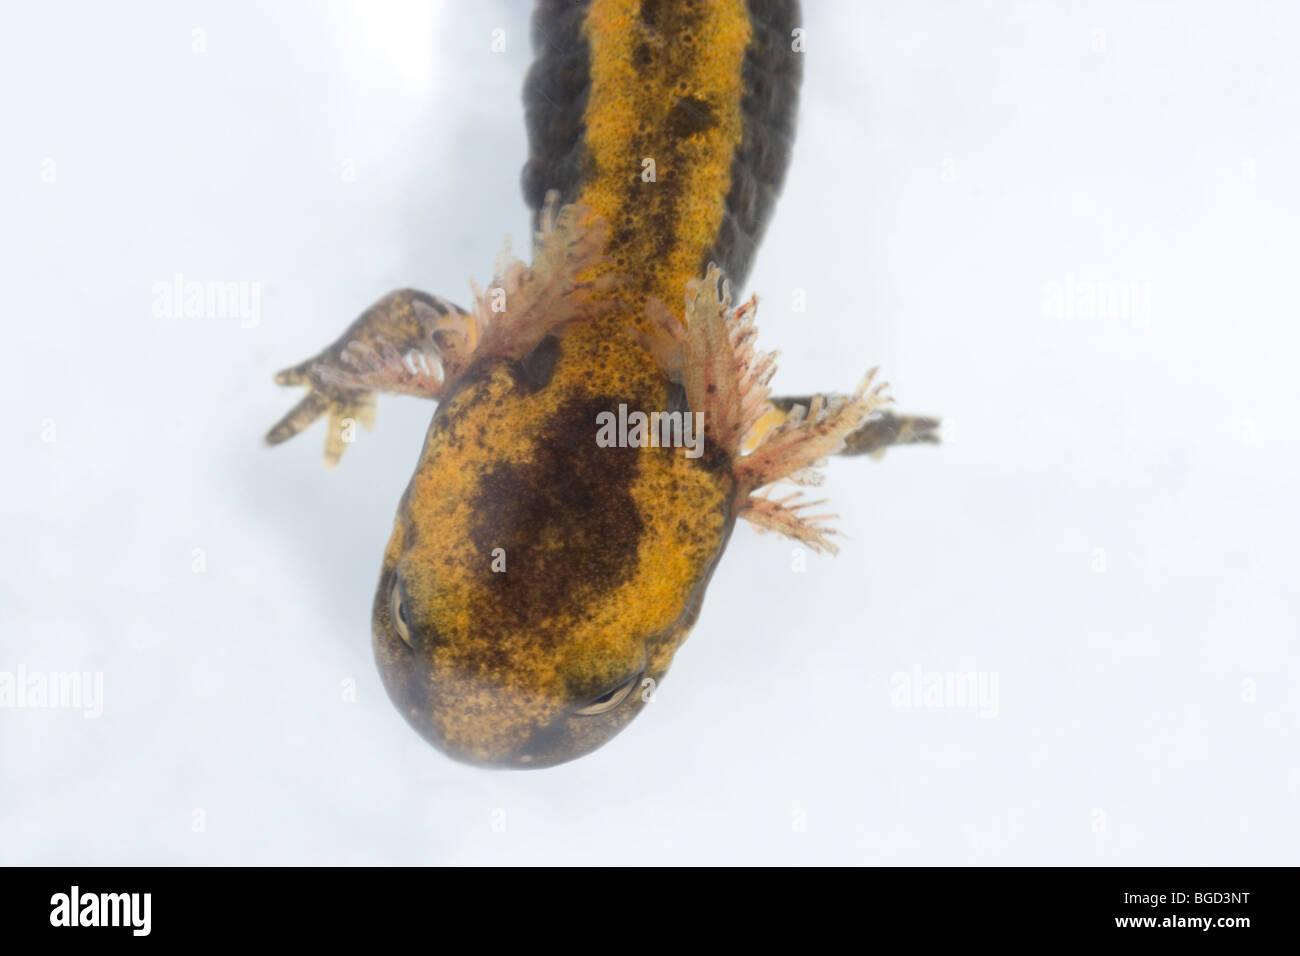 Unione salamandra pezzata (Salamandrs salamandra). Larva o tadpole mostrando le branchie esterne per la respirazione in acqua. Foto Stock